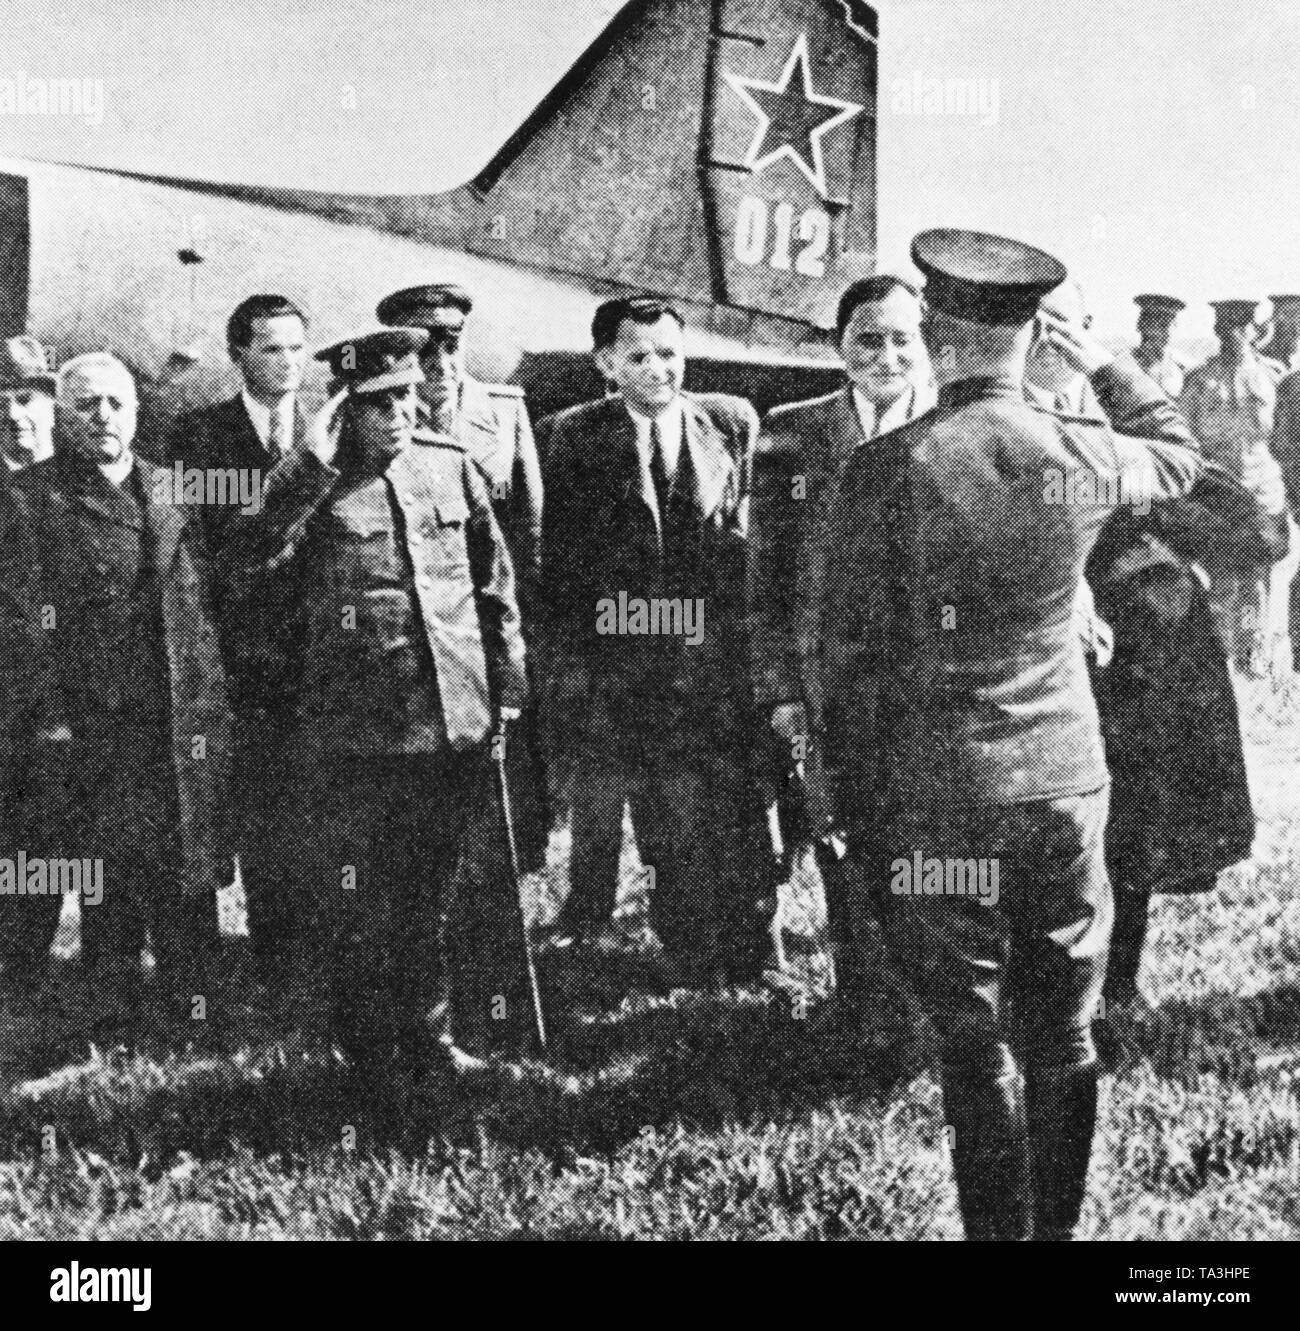 Le 5 avril 1945, un nouveau gouvernement Tchécoslovaque a été formé à Kosice. Le gouvernement est composé d'hommes politiques social-démocrate et communiste et son objectif était de reconstruire la Tchécoslovaquie après la guerre. Dans l'image, l'atterrissage du gouvernement à Prague. Ils sont arrivés avec un avion soviétique. Banque D'Images